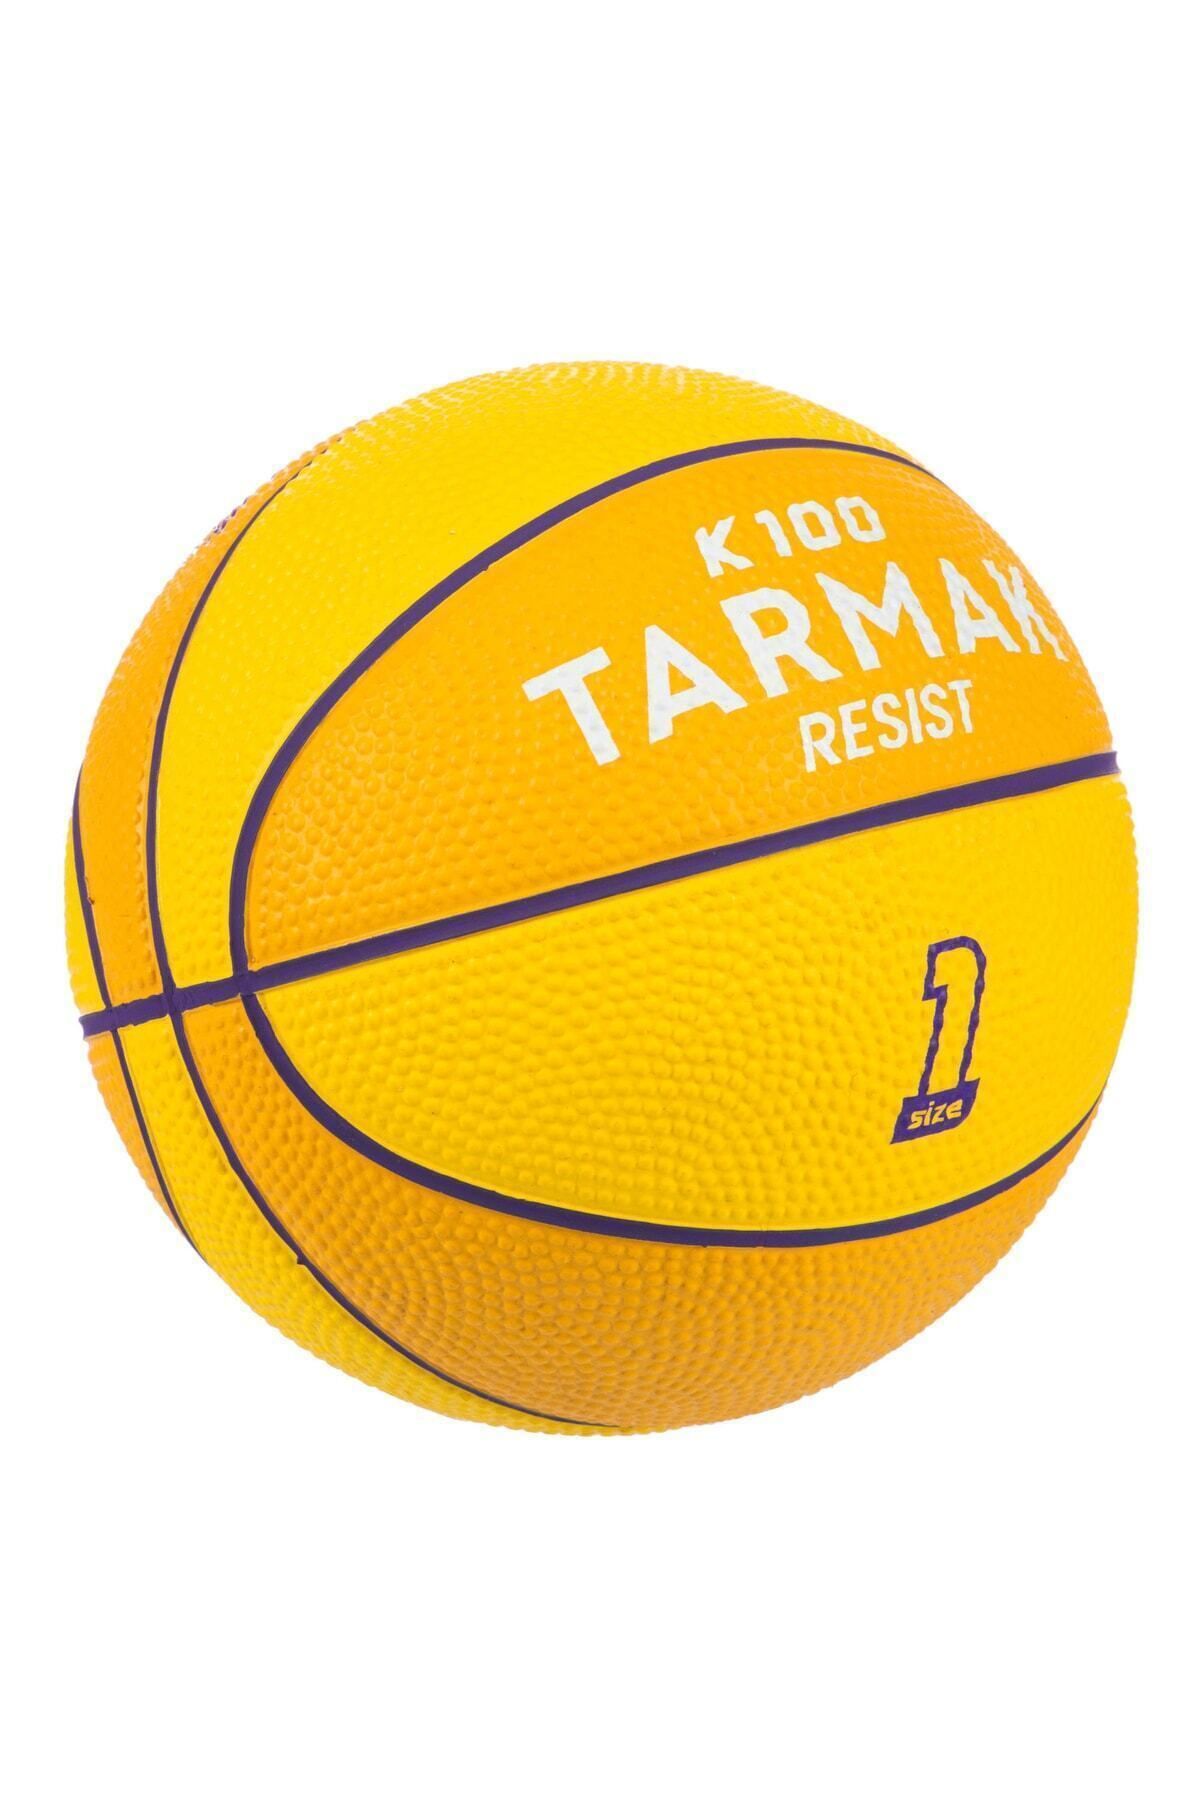 Decathlon Tarmak Mini Basketbol Topu - 1 Numara - Sarı / Mor - K100